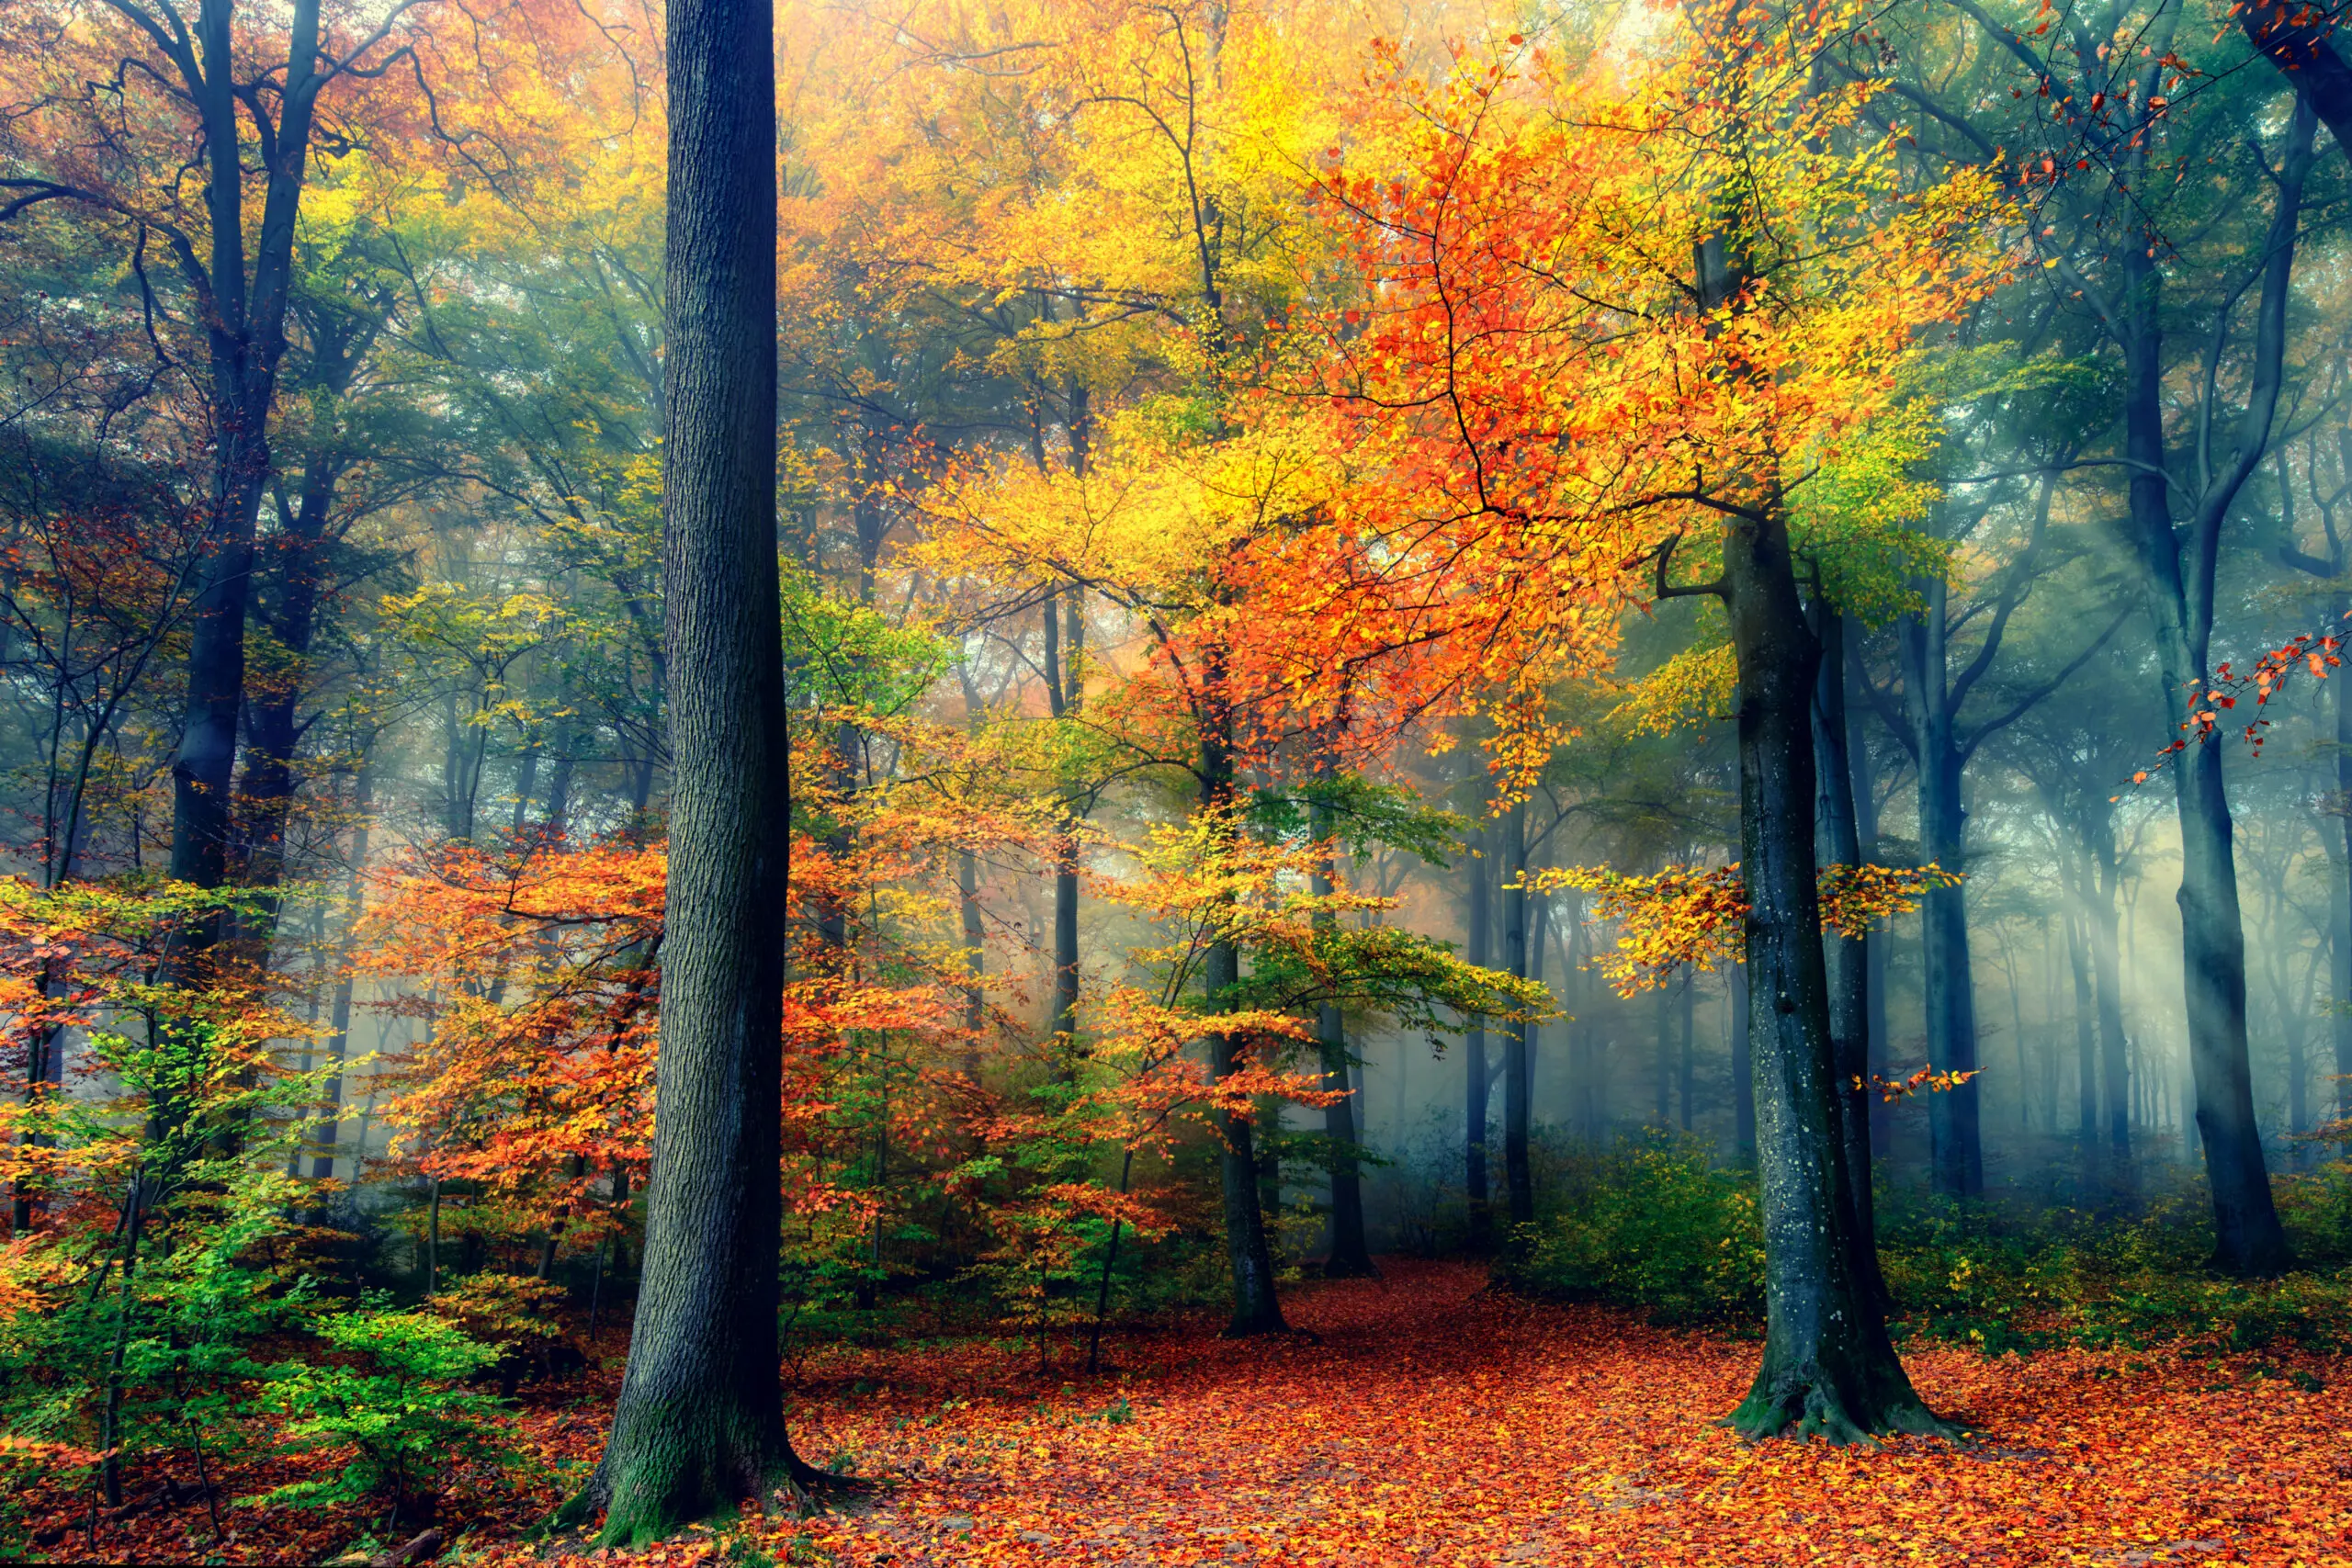 Wandbild (6332) Autumn by Fabrizio Massetti,1x.com präsentiert: Natur,Landschaften,Bäume,Blätter,Wälder,Wege,Herbst